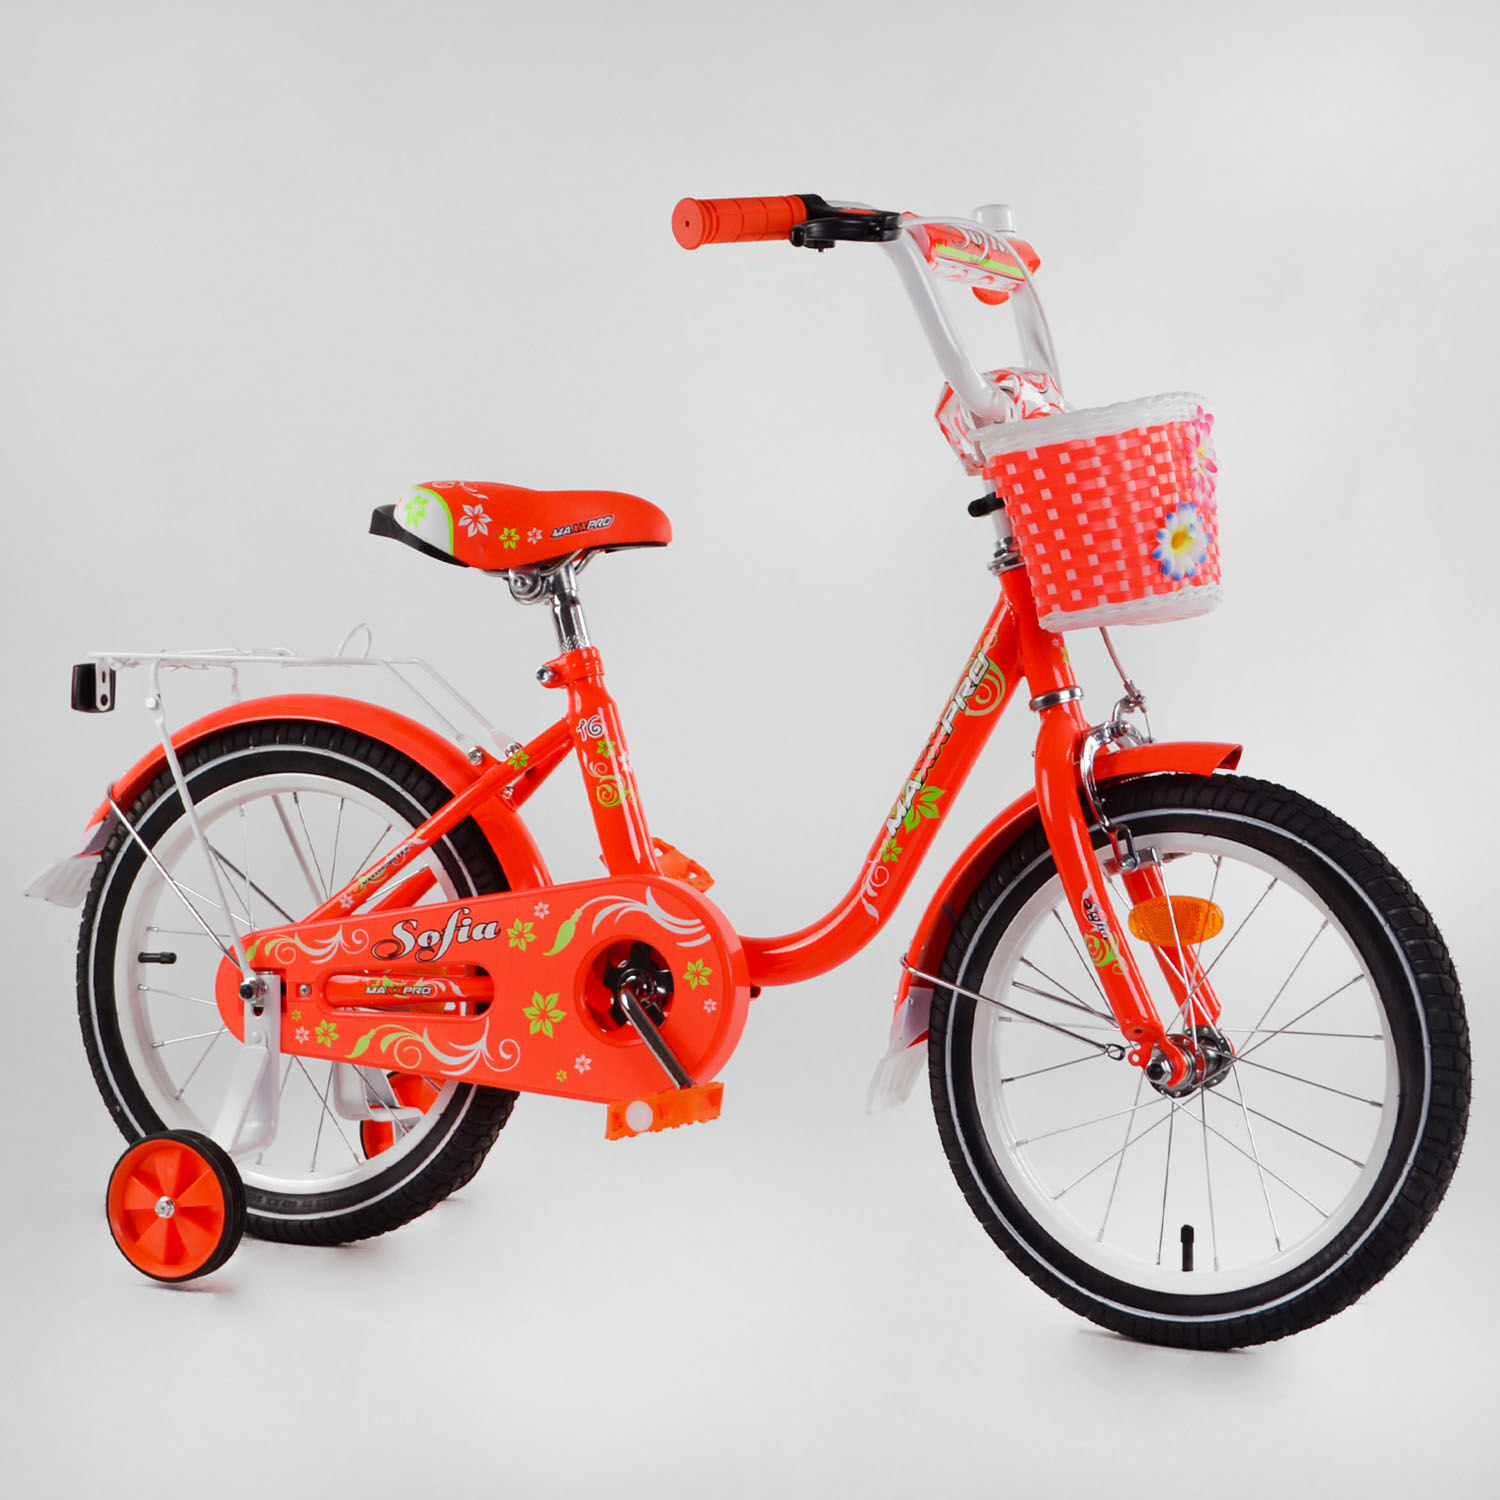 Акция на Велосипед Corso Sofia N 16-3 (оранжевый) от Stylus